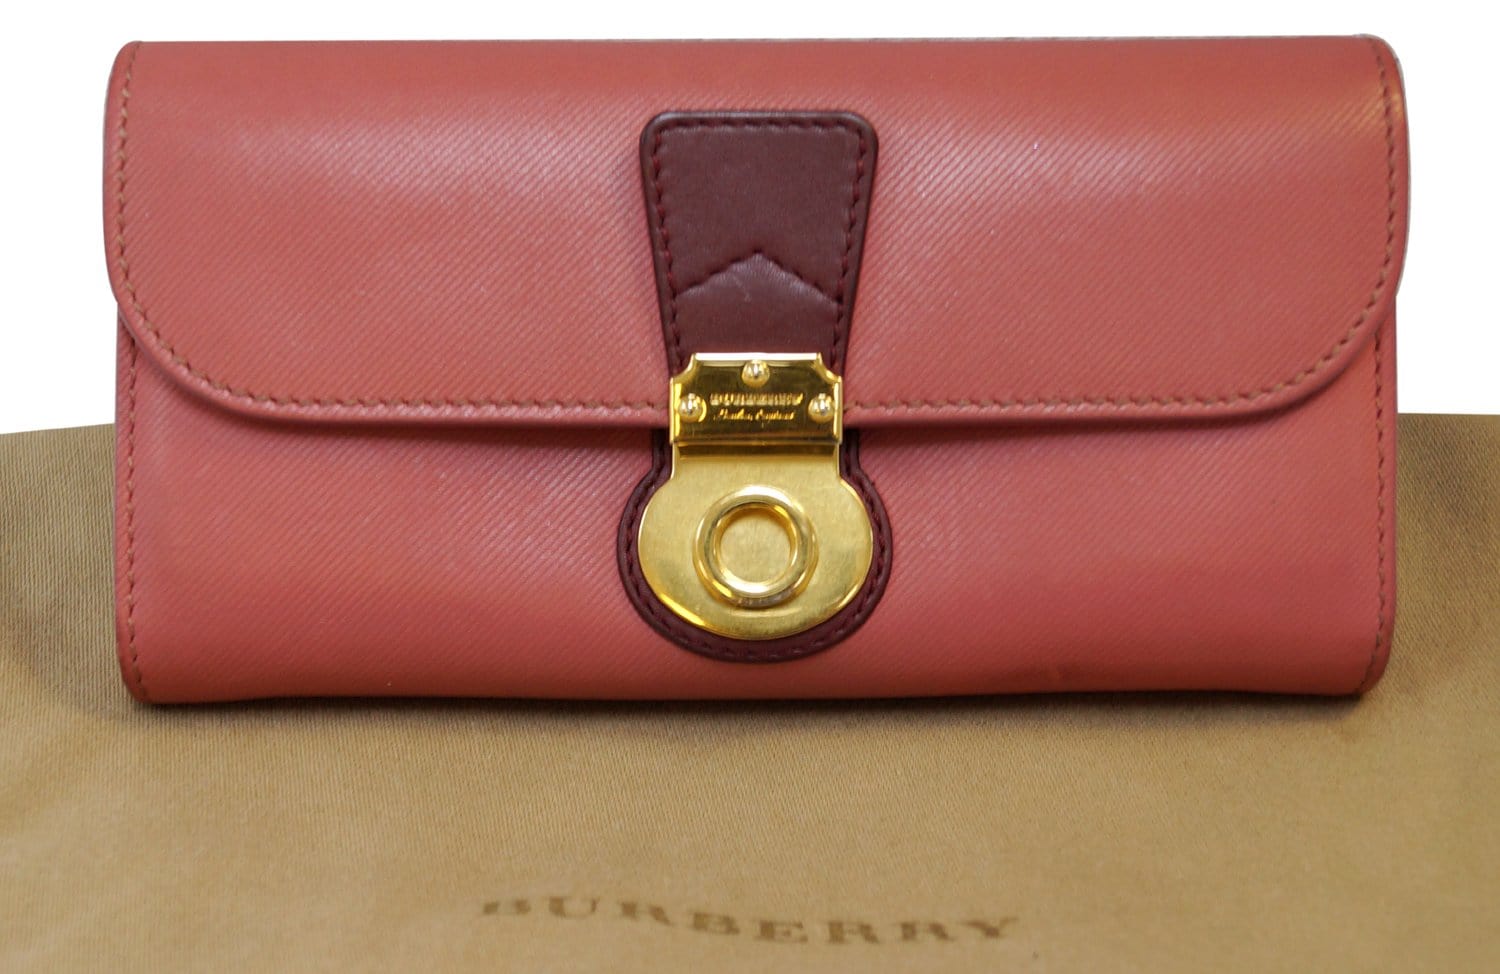 BURBERRY Calfskin Haymarket Check Continental Wallet Pink 143897